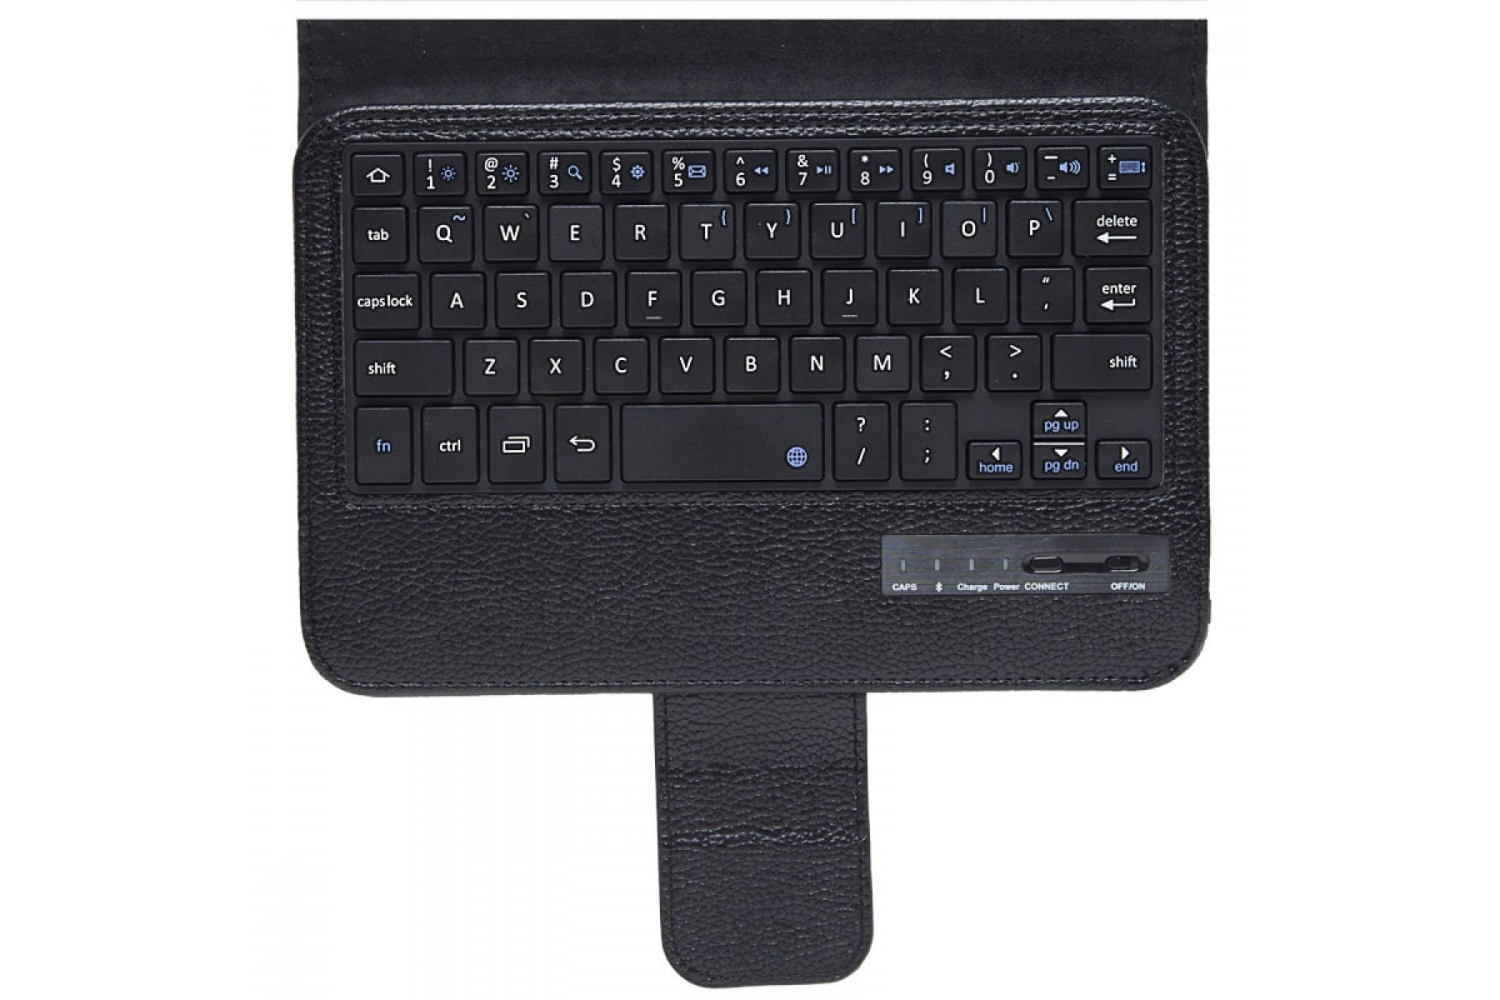 Samsung Tab A 7.0 hoes met toetsenbord zwart T280 T285